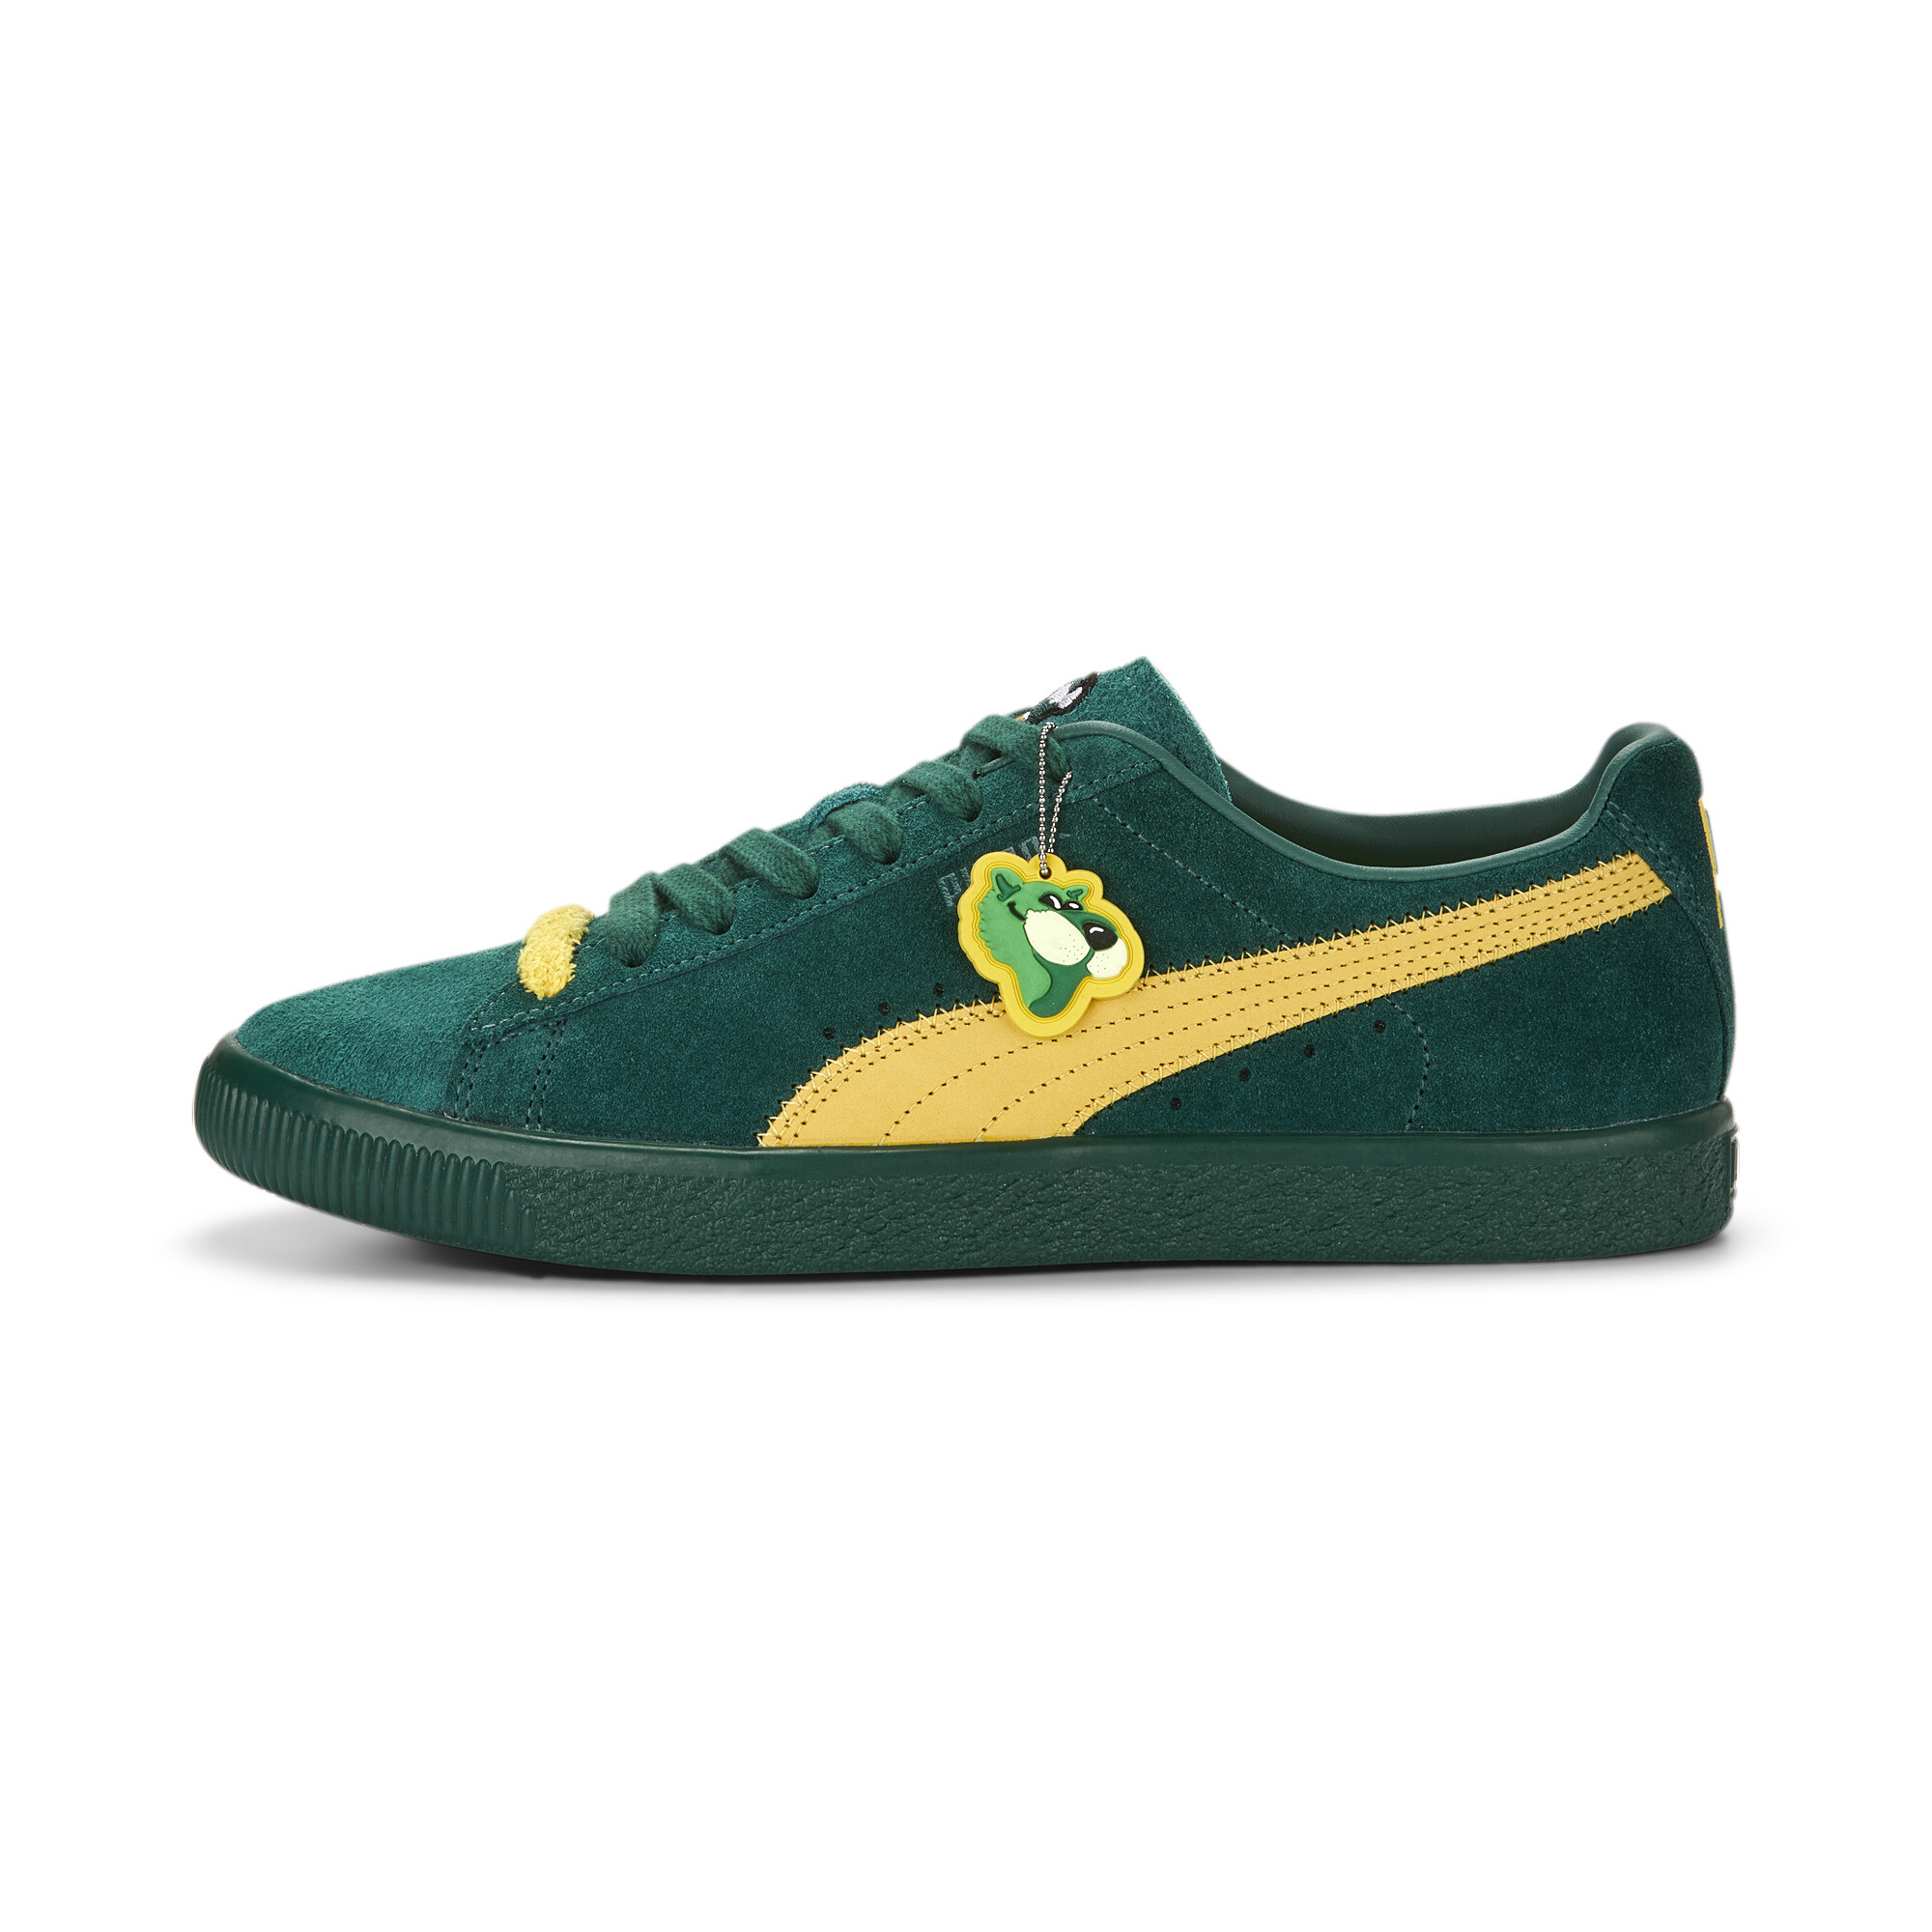 Men's Clyde Super PUMA Sneakers In 40 - Green, Size EU 37